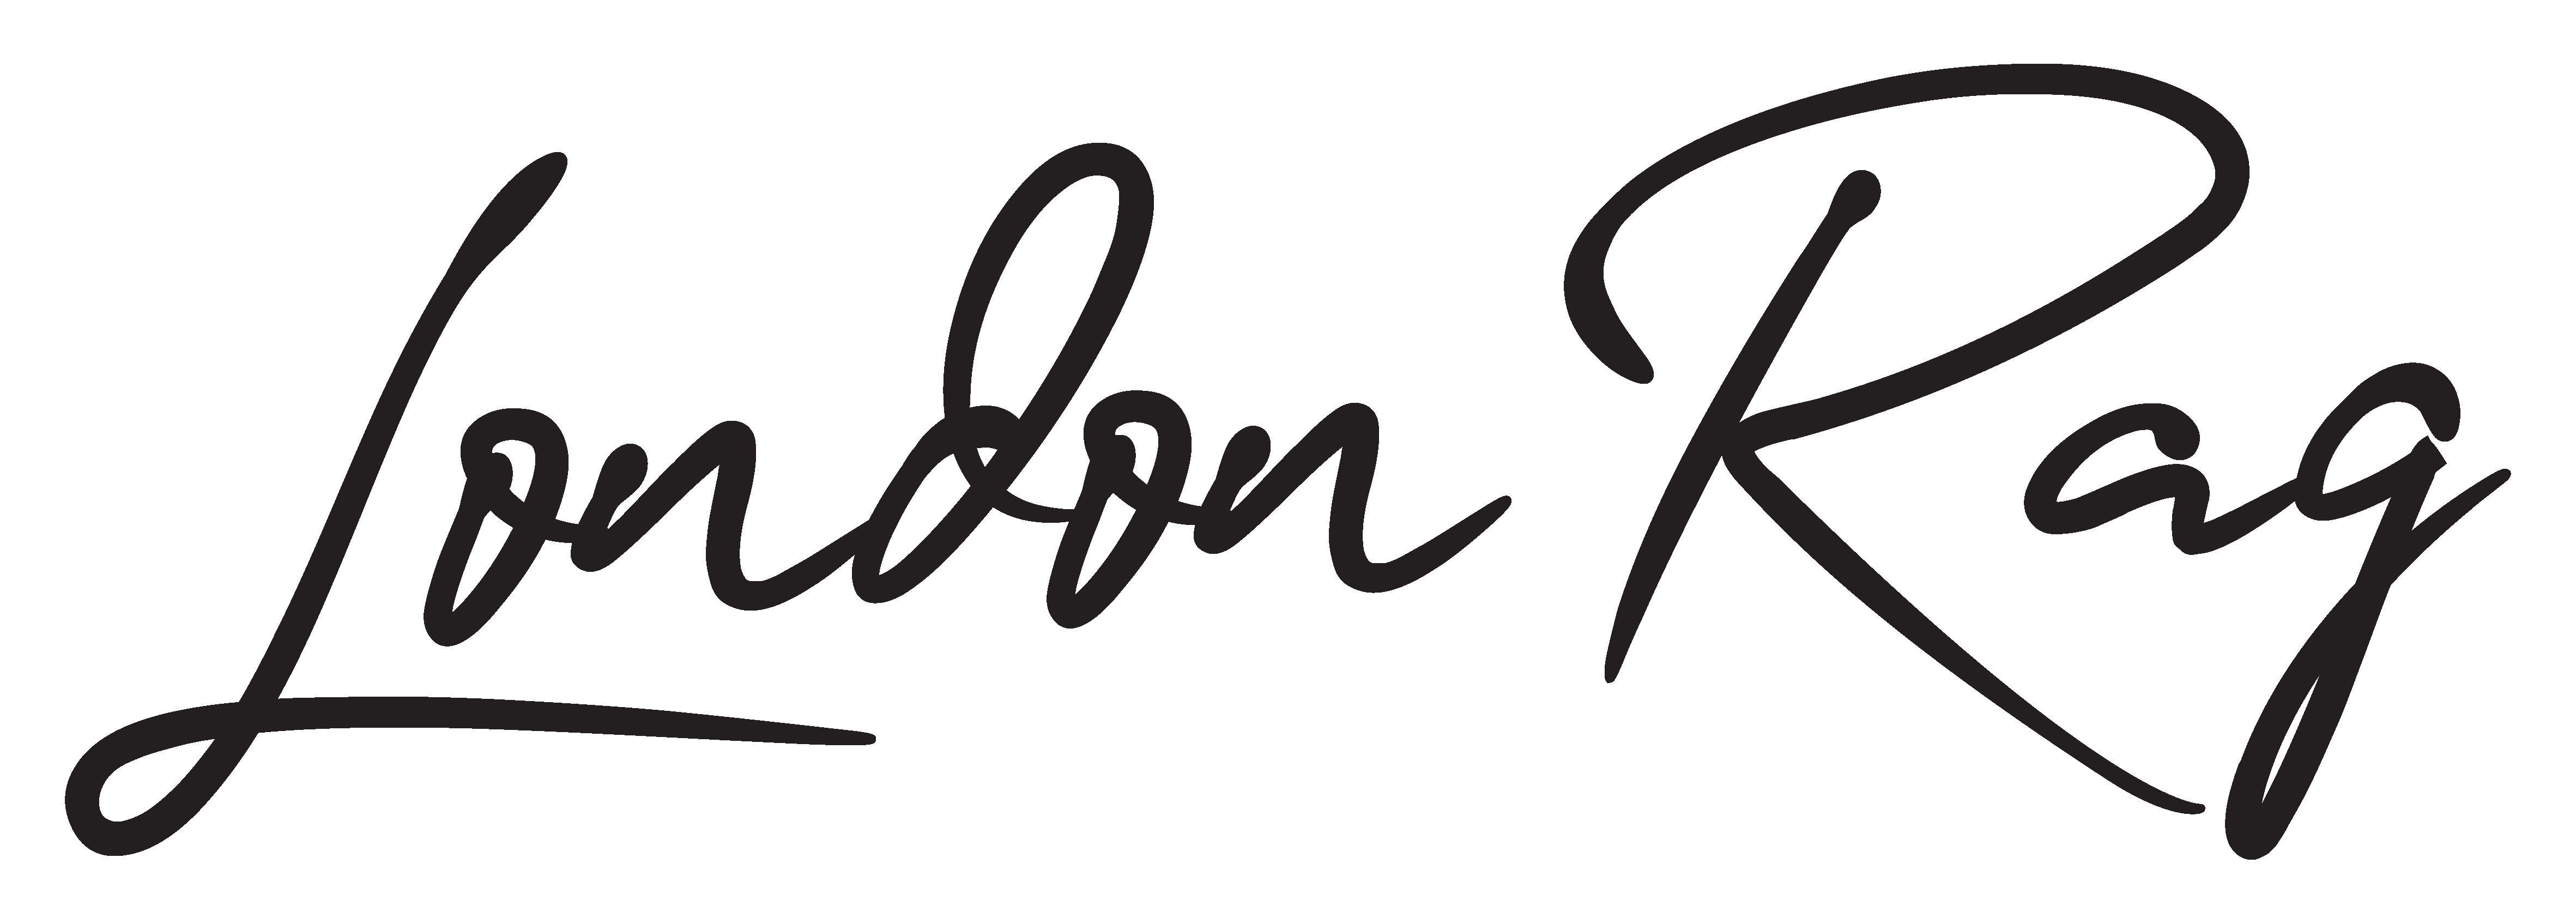 Londonrag logo